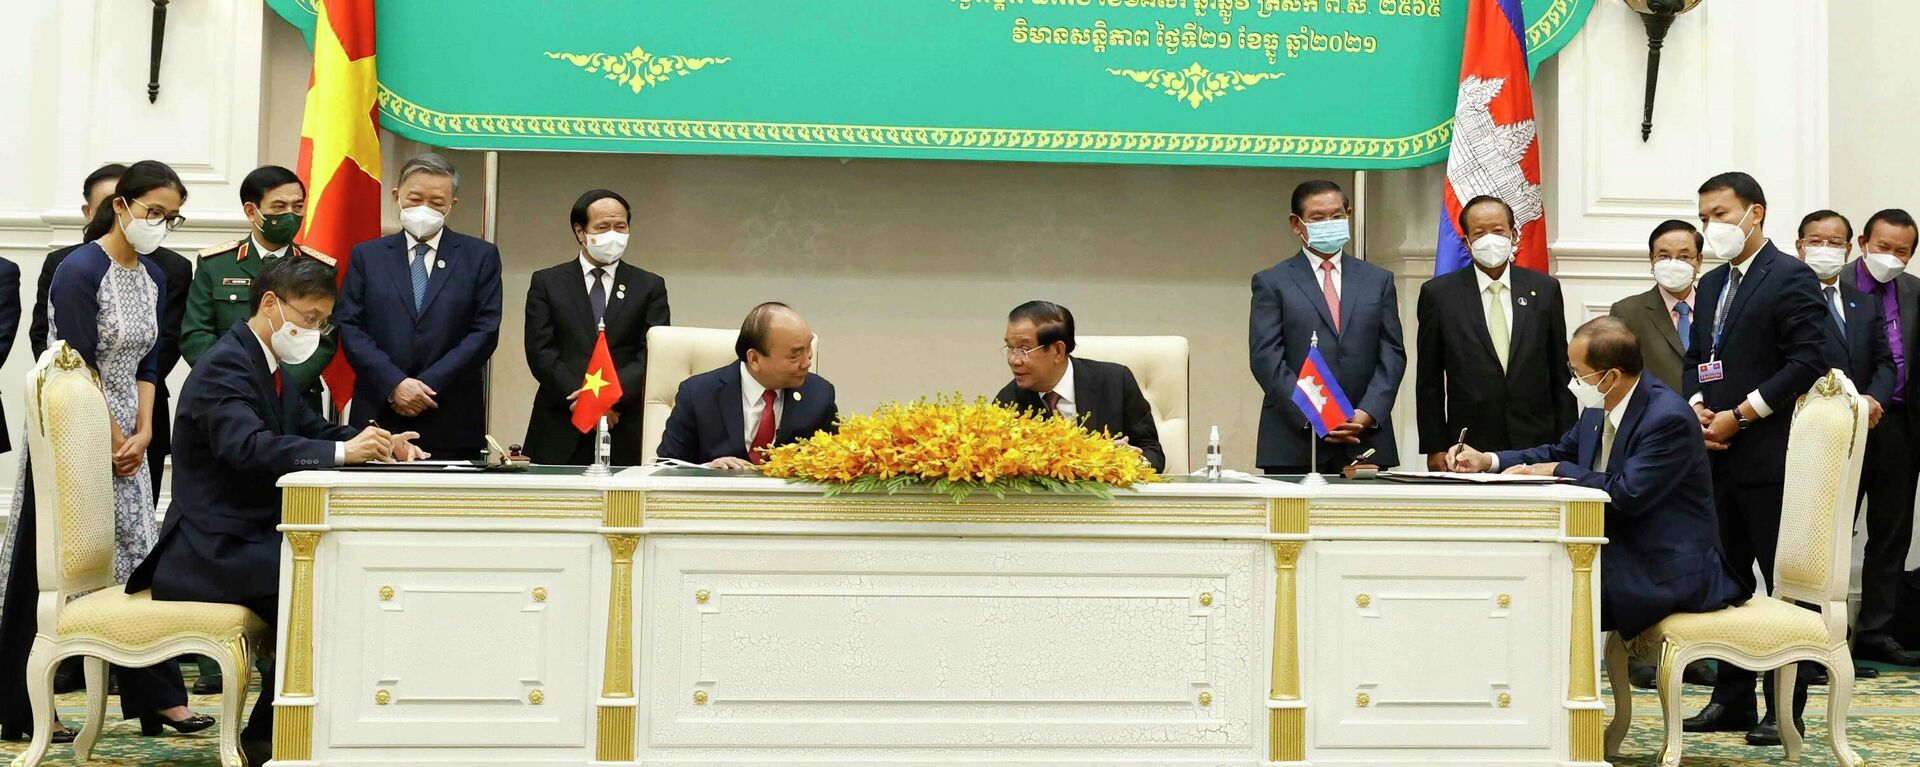 Chủ tịch nước Nguyễn Xuân Phúc và Thủ tướng Campuchia Samdech Techo Hun Sen chứng kiến lễ ký kết và trao đổi văn kiện hợp tác giữa hai nước - Sputnik Việt Nam, 1920, 22.12.2021